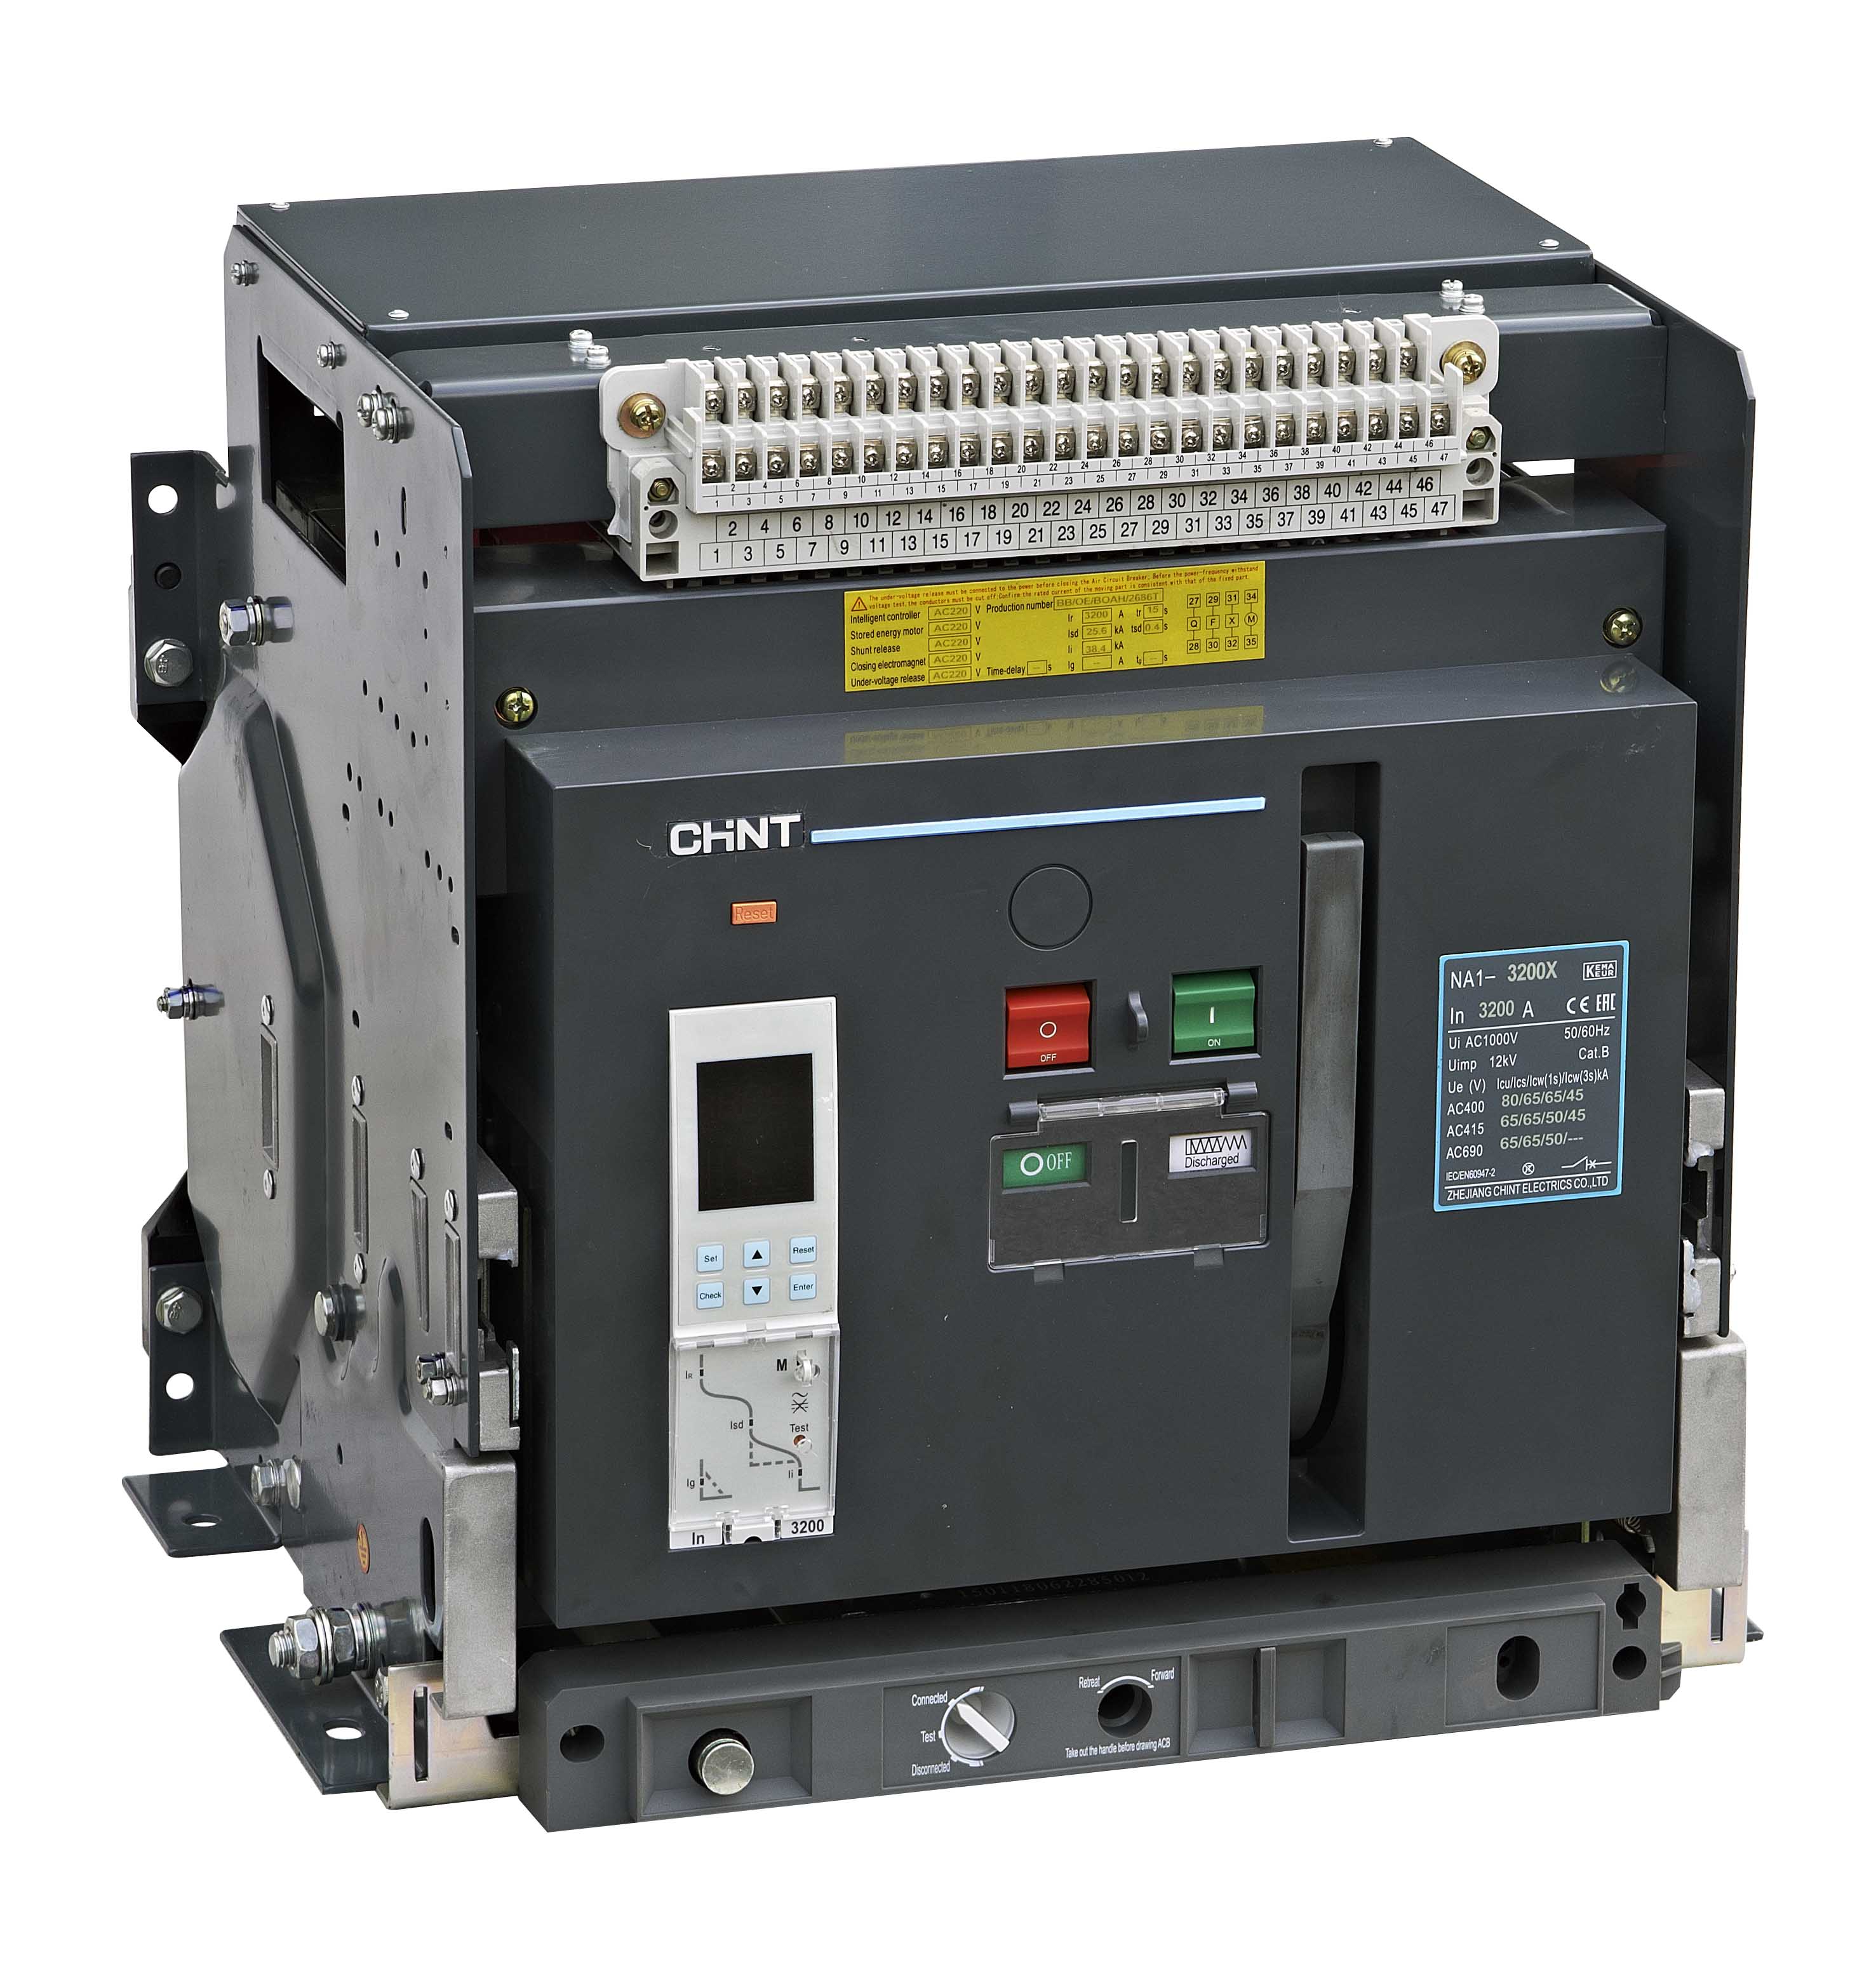 Автоматический выключатель 2000а. CHINT воздушный автоматический выключатель NXA. Автоматический выключатель na1- 2000-1600m. Na1-2000-1600м/3p. Автоматический выключатель CHINT 630а.